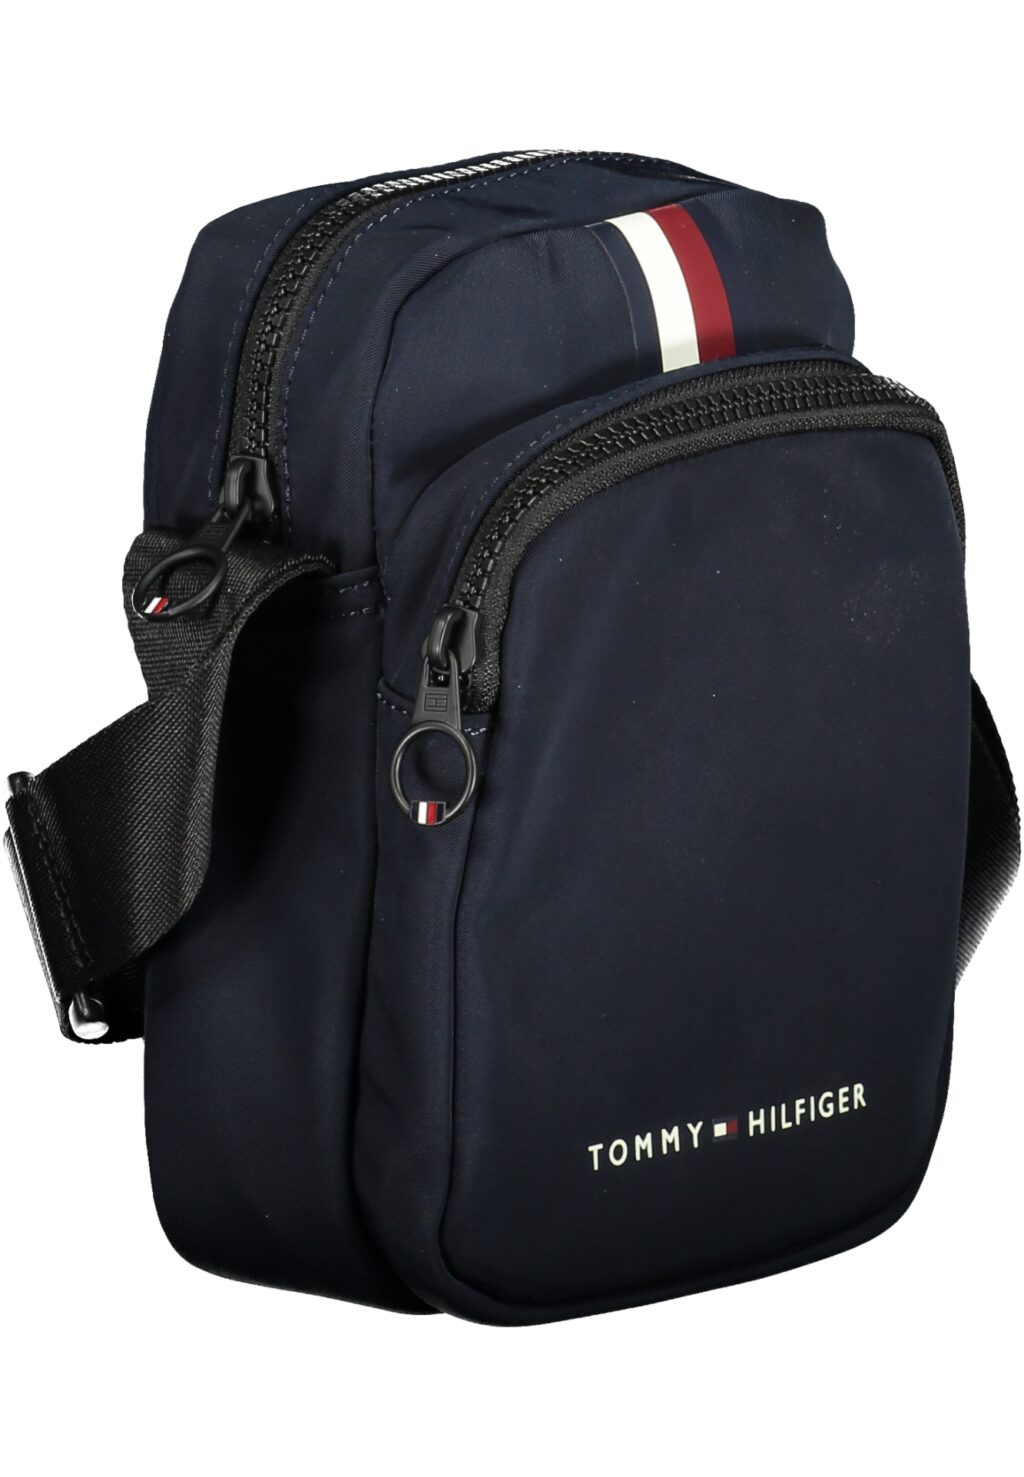 TOMMY HILFIGER MEN'S BLUE SHOULDER BAG AM0AM12091_BLDW6